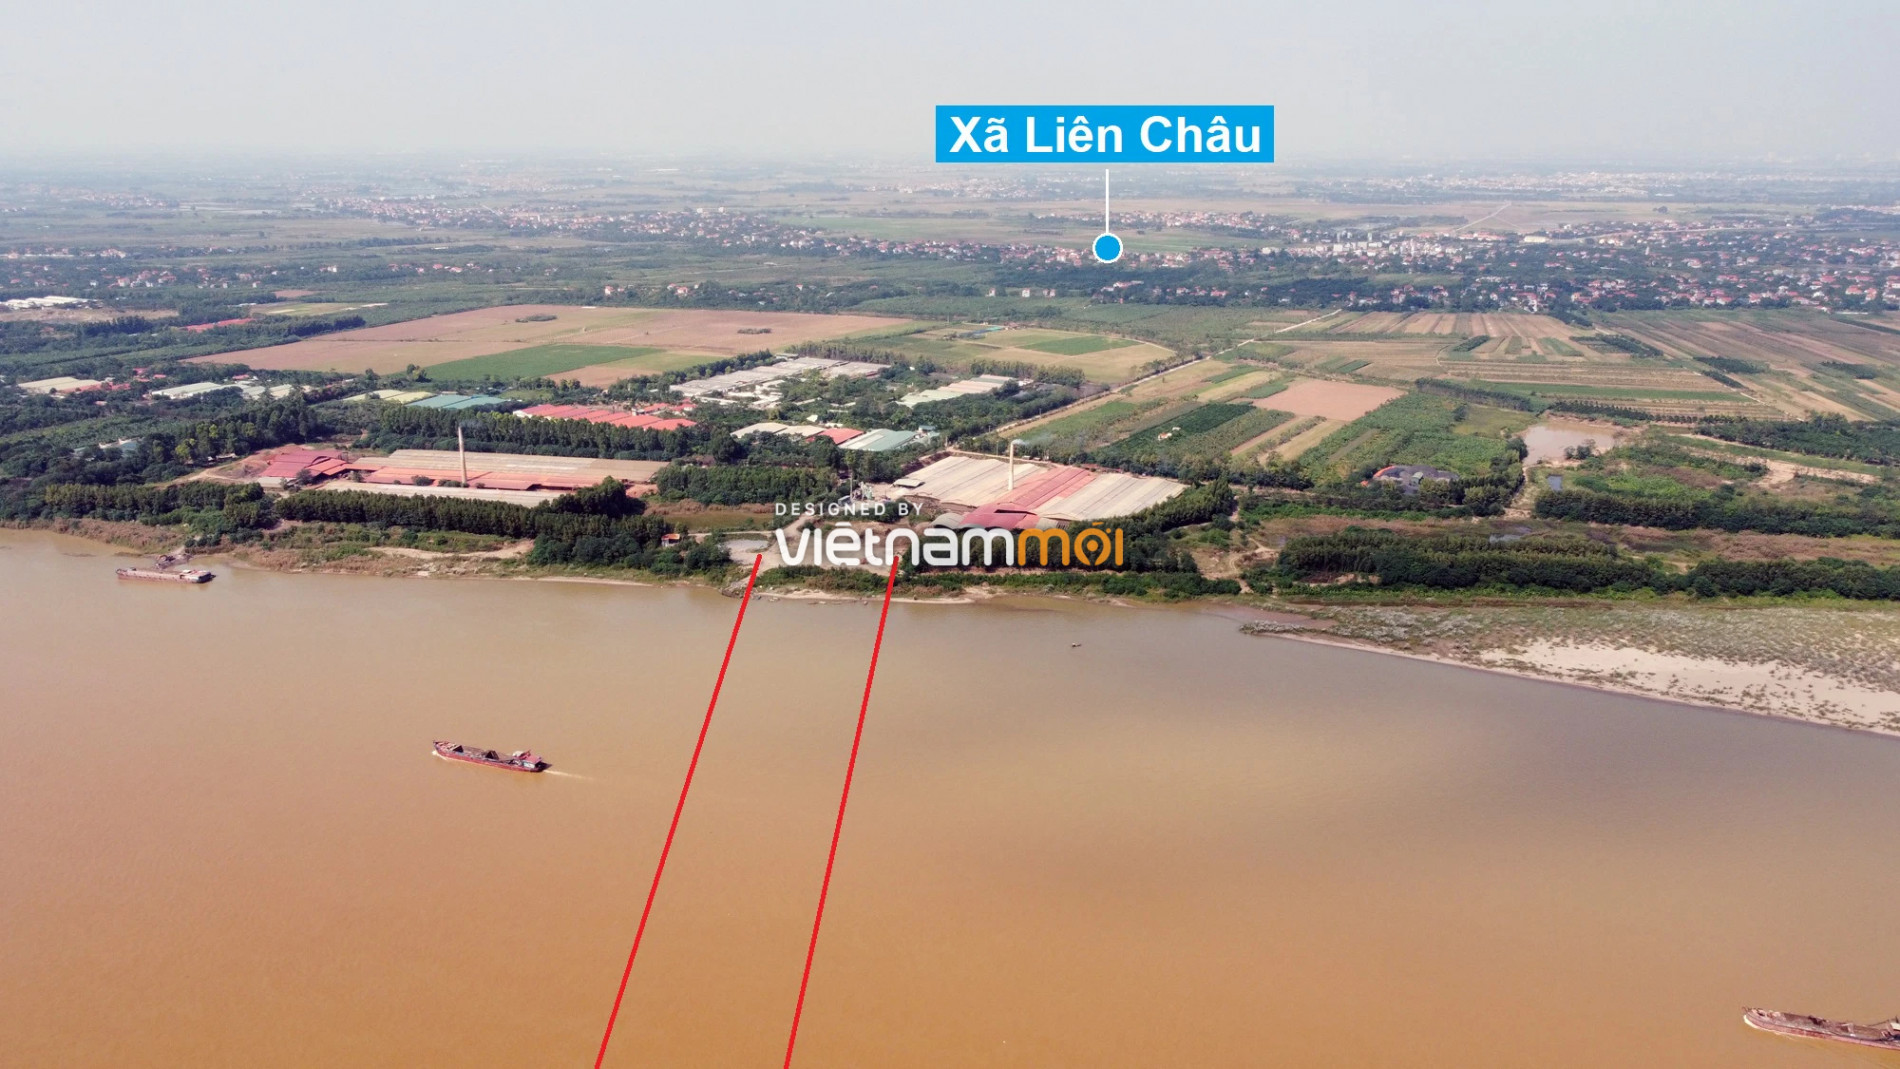 Cầu sẽ mở theo quy hoạch ở Hà Nội: Toàn cảnh cầu Vân Phúc nối Phúc Thọ với Yên Lạc, Vĩnh Phúc - Ảnh 4.